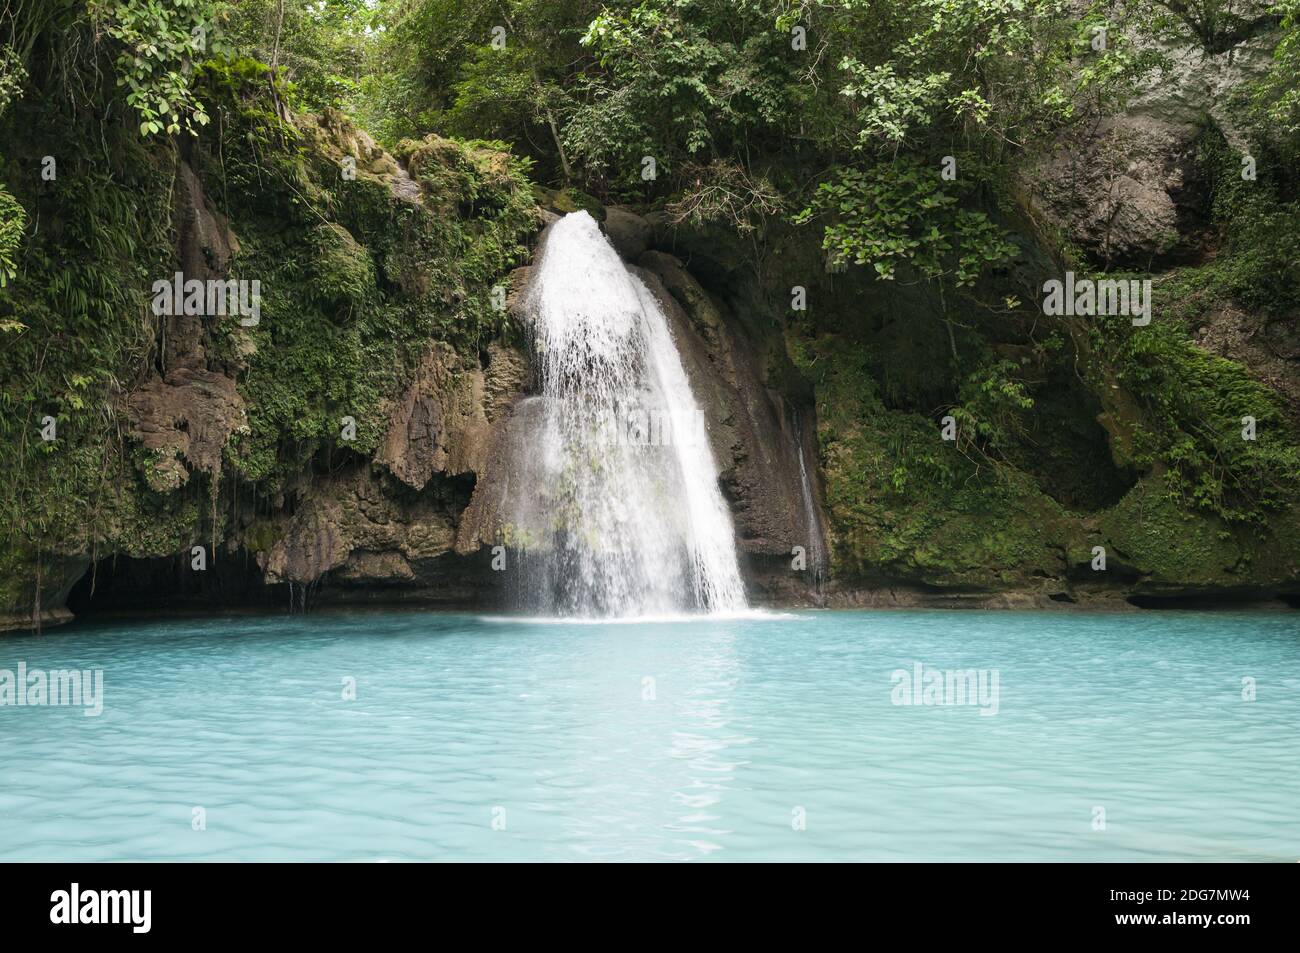 Wasserfall im grünen Dschungel auf der Insel Cebu, Philippinen. Stockfoto